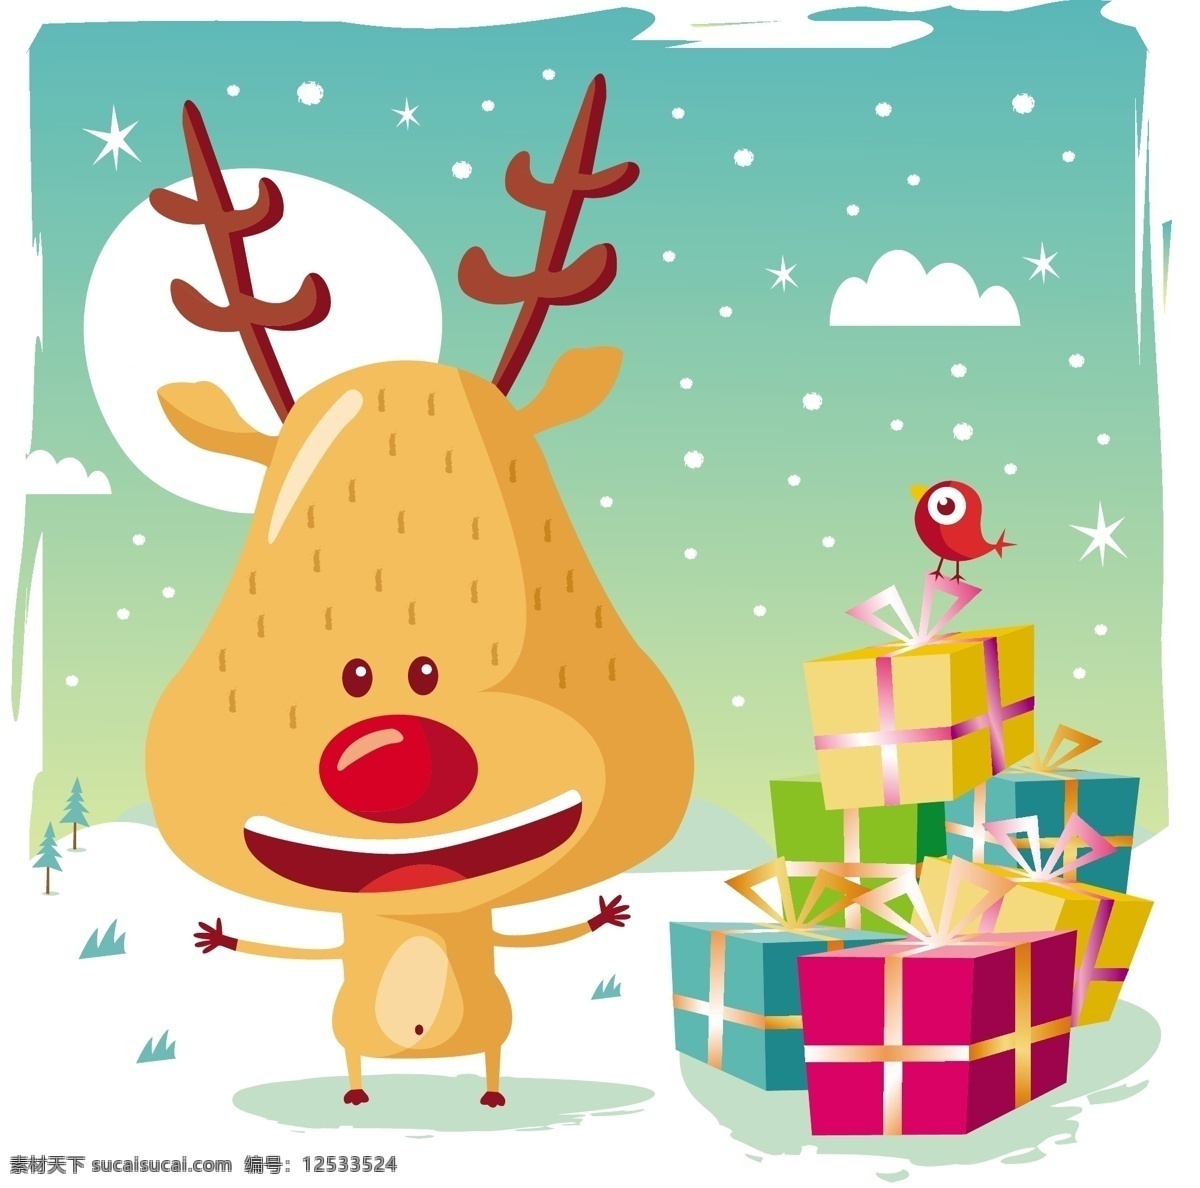 插画 冬季 动感 节日素材 卡通 卡通圣诞麋鹿 圣诞 麋鹿 矢量 可爱 模板下载 圣诞节 圣诞鹿 雪花 矢量素材 元素